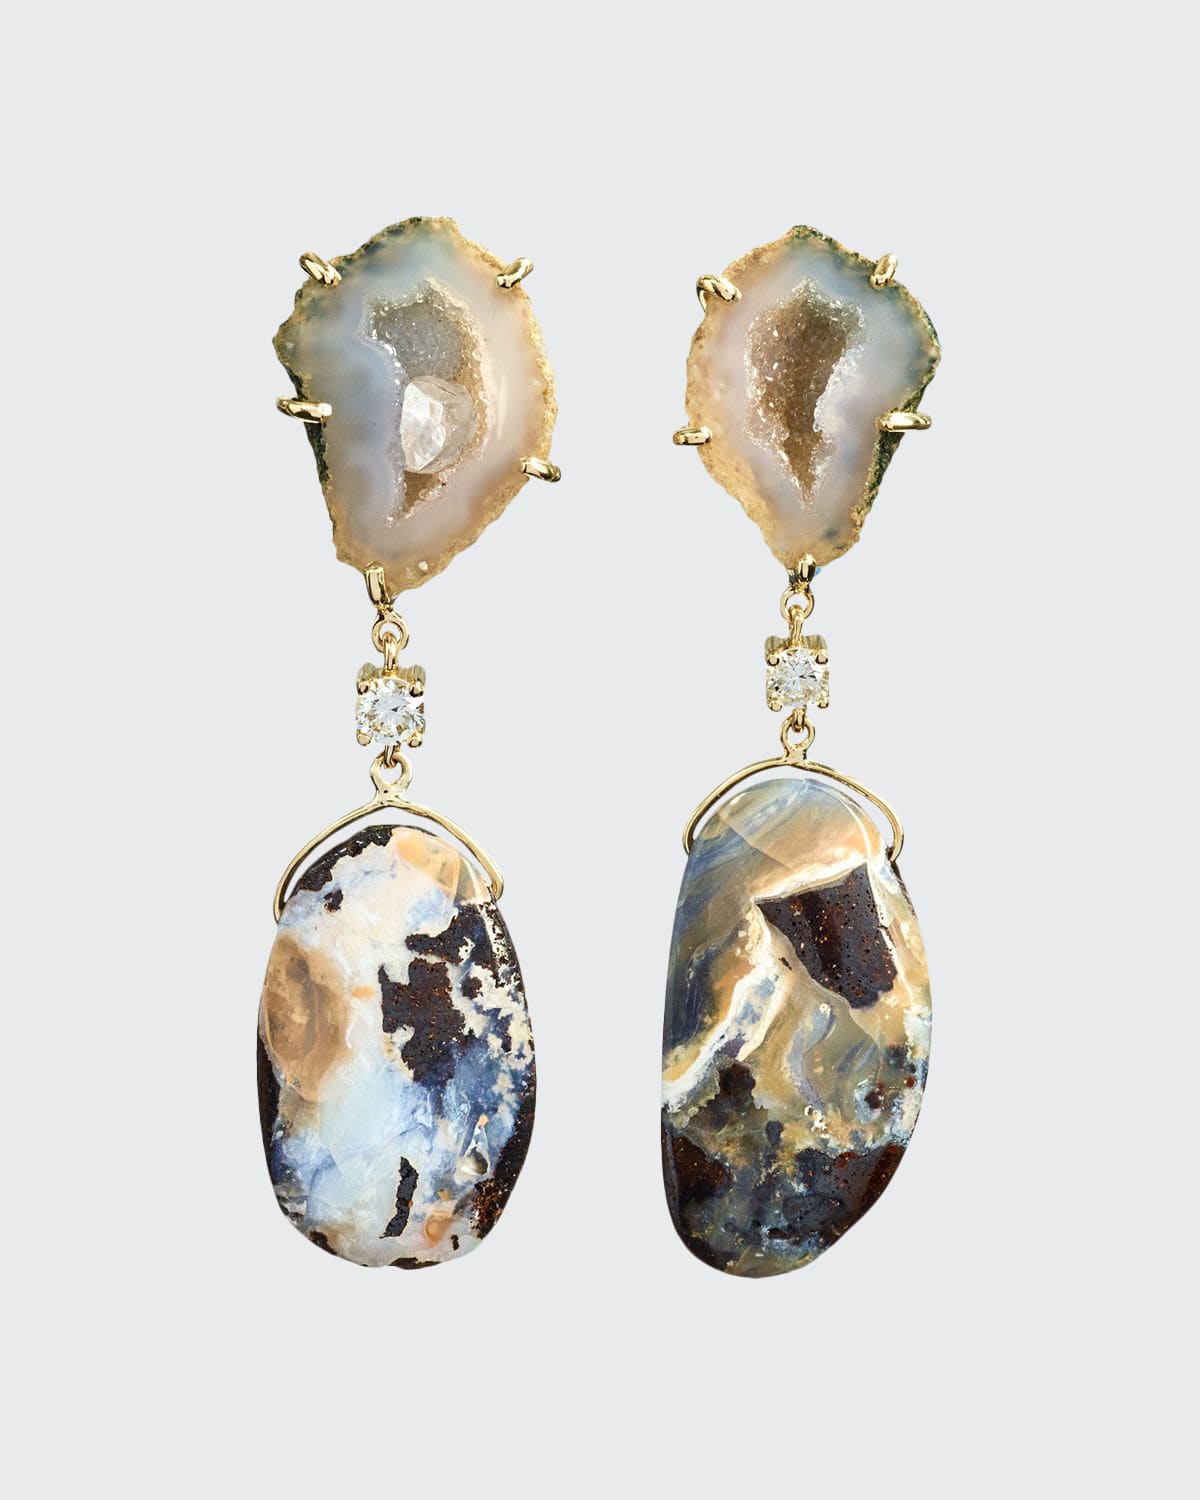 18k Bespoke 2-Tier One-of-a-Kind Luxury Earrings w/ Tan Tabasco Geode, Natural Boulder Opal & Diamonds